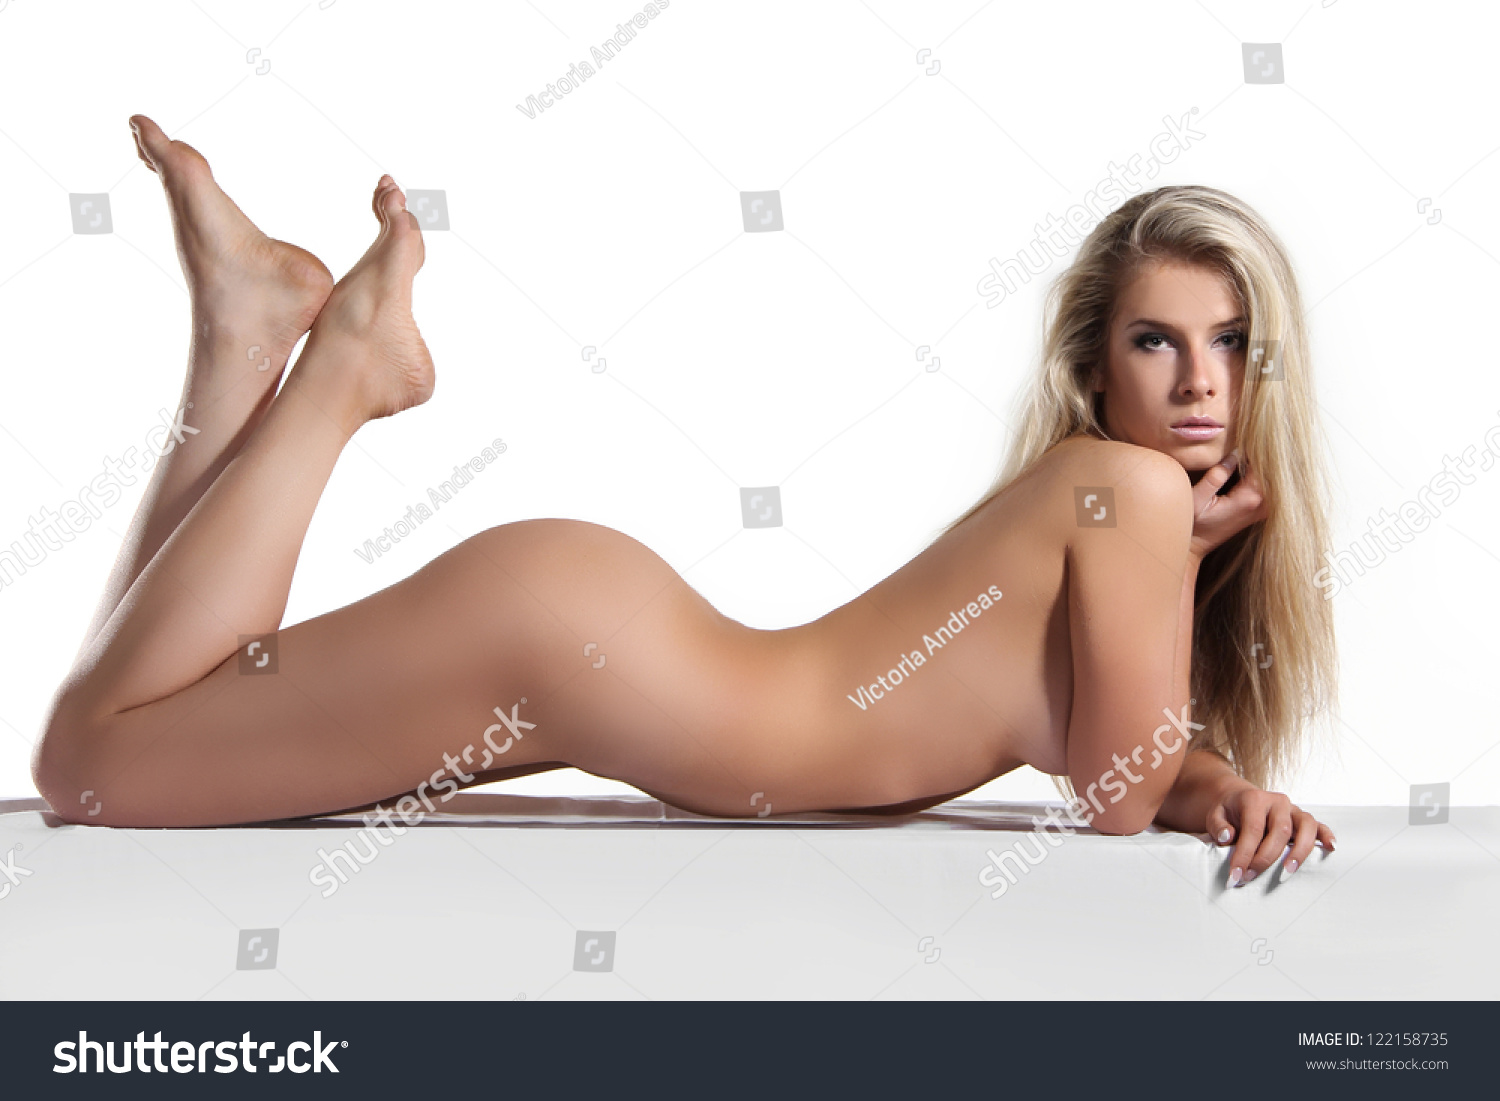 Nice body women naked-naked photo